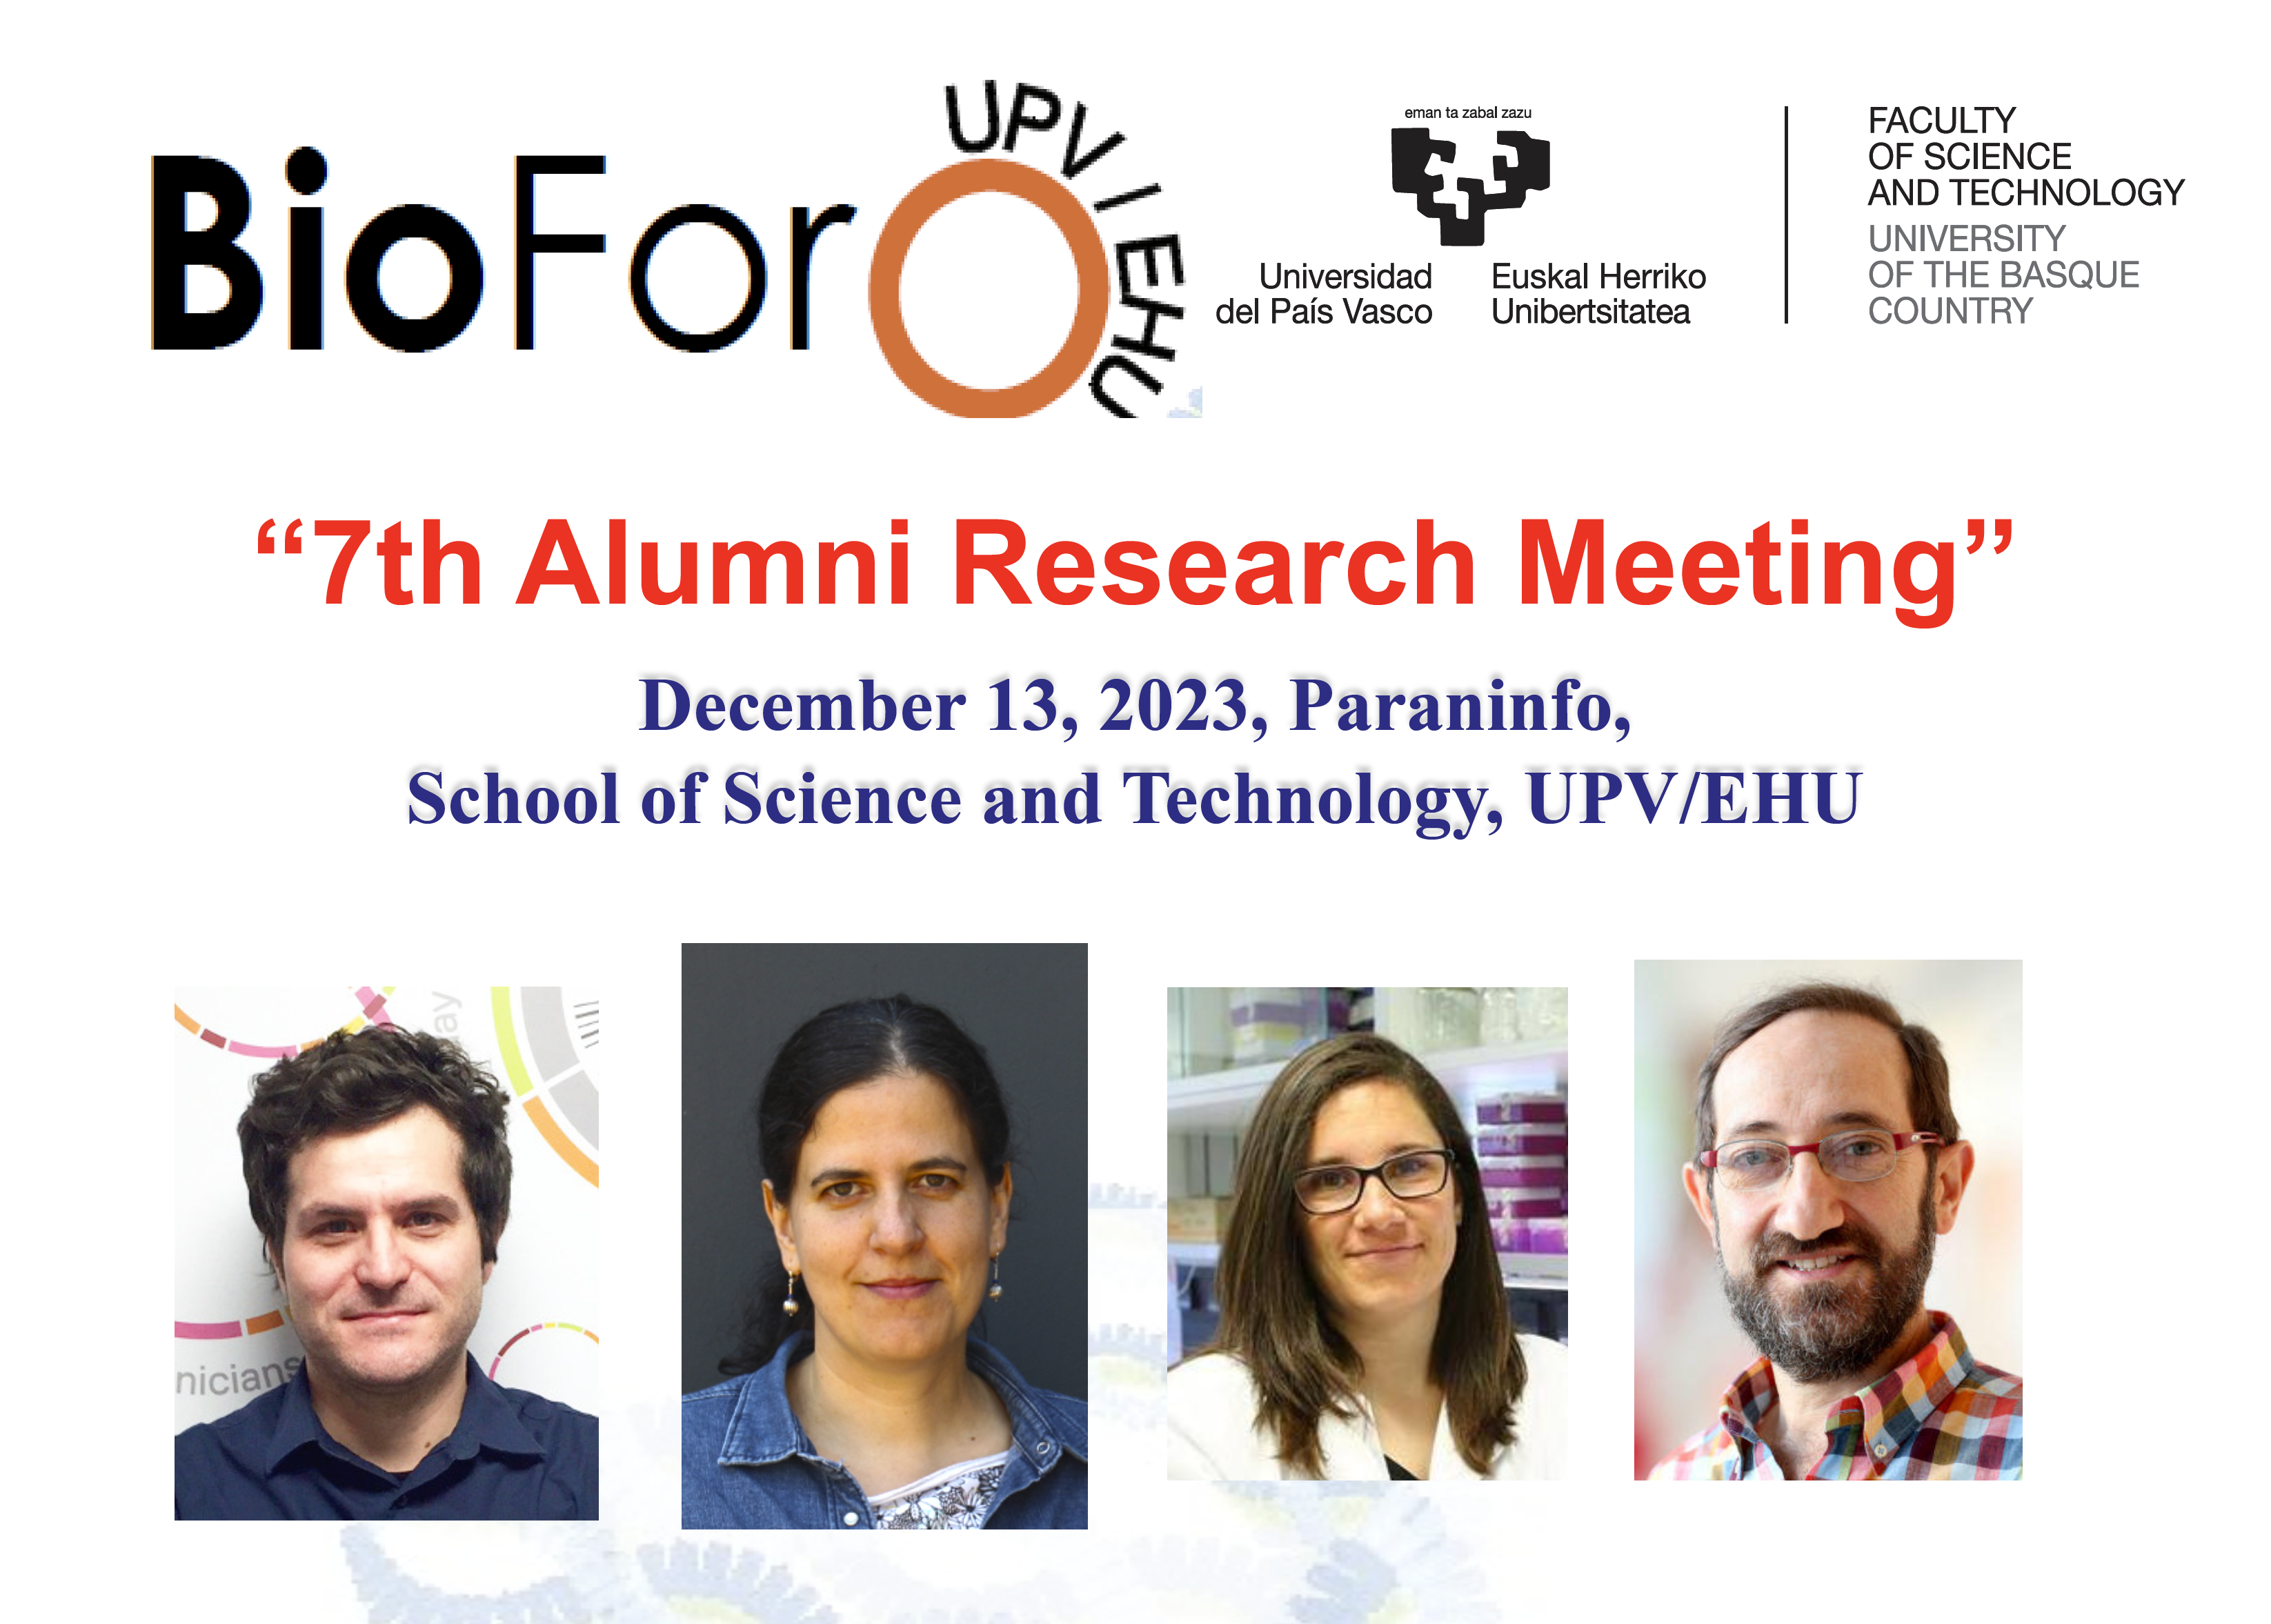 Annual BioForo Meeting: “7th Alumni Research Meeting”